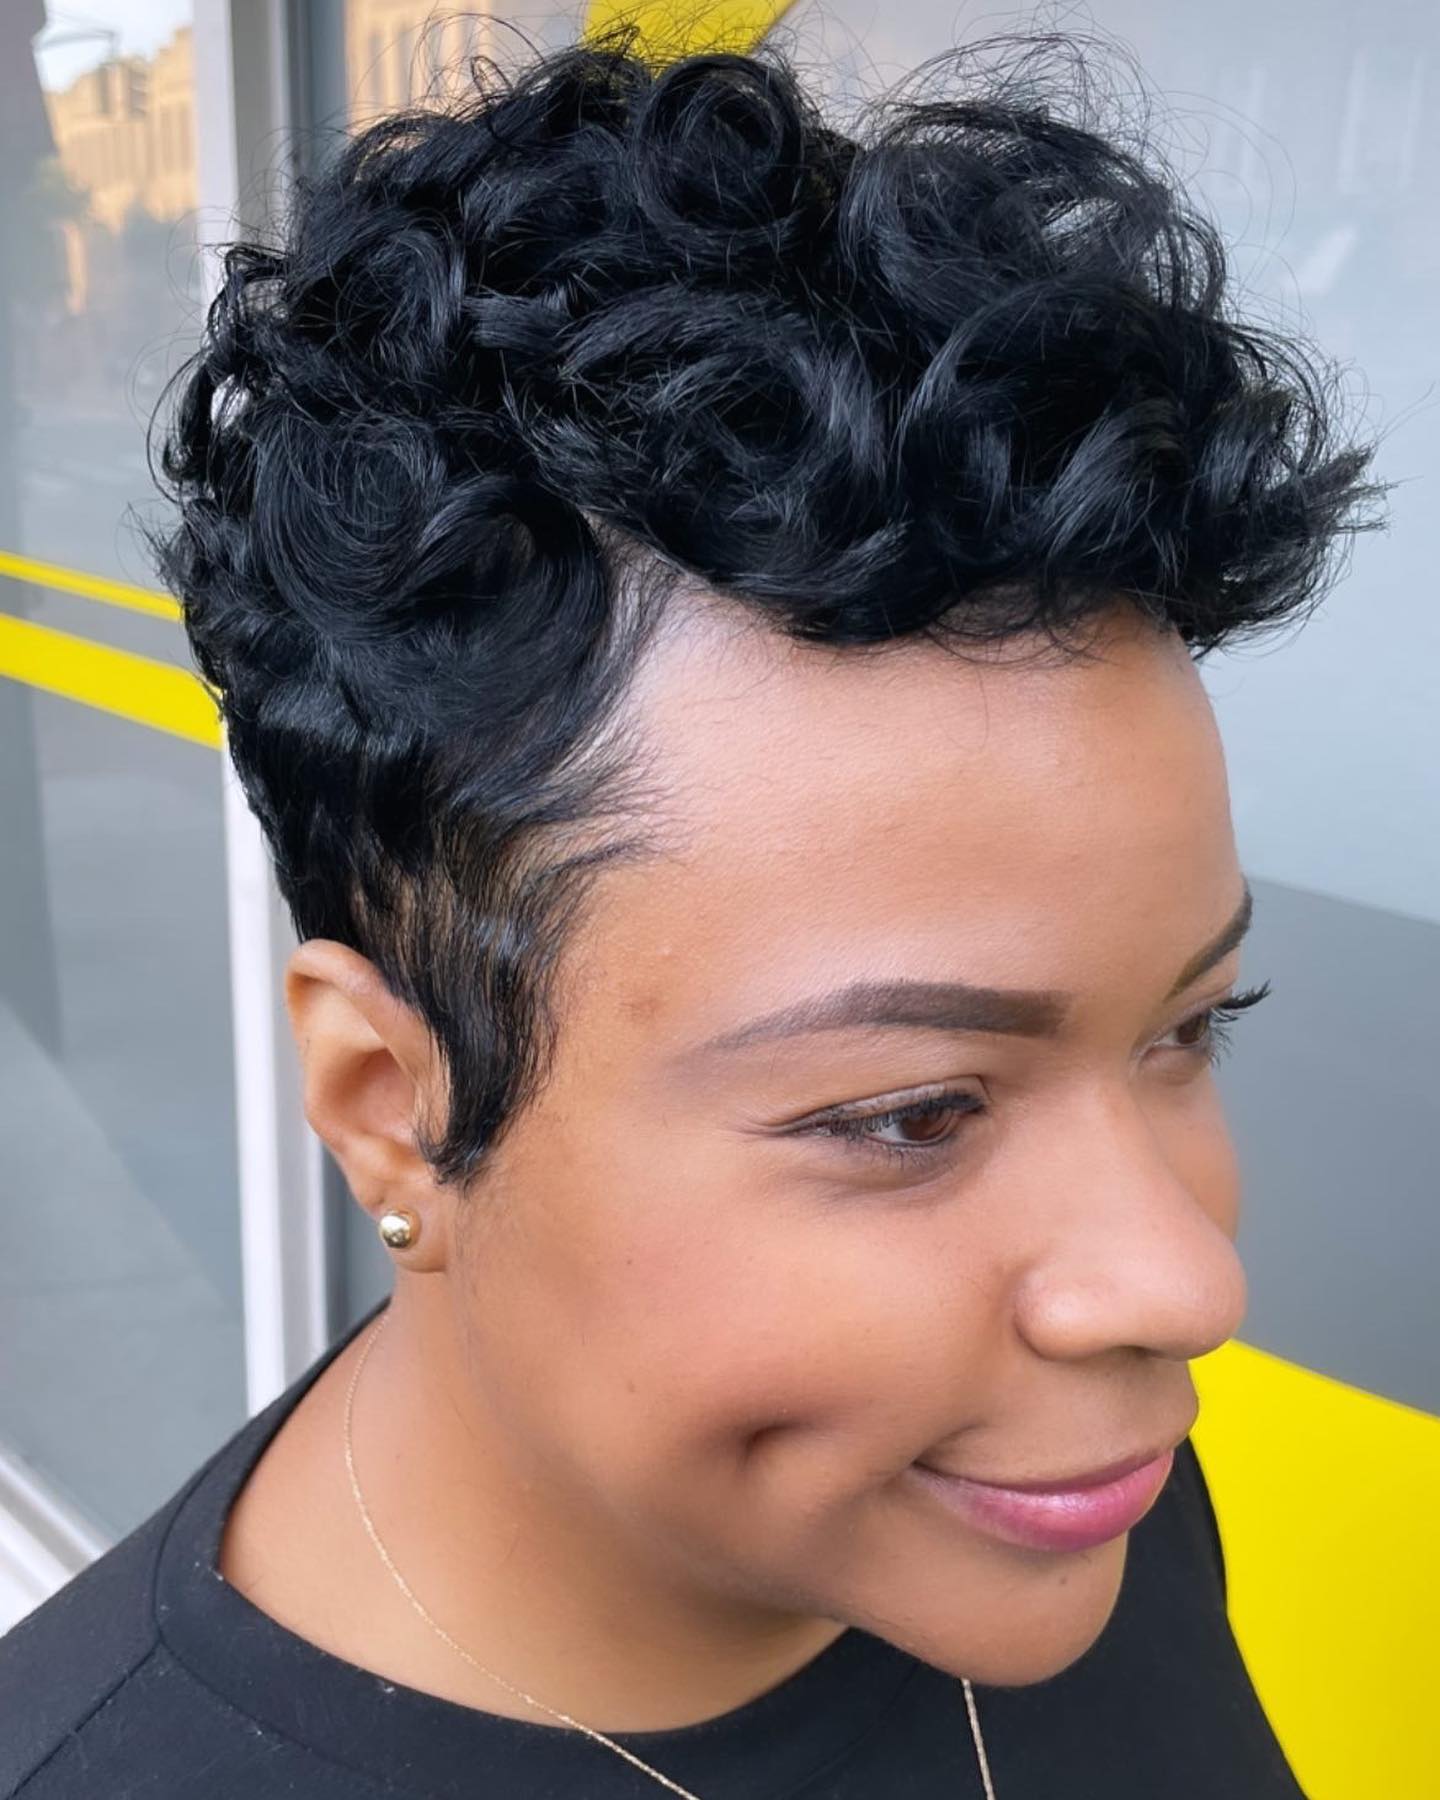 The Best Short Hair Styles For Black Women - AtlantaFi.com